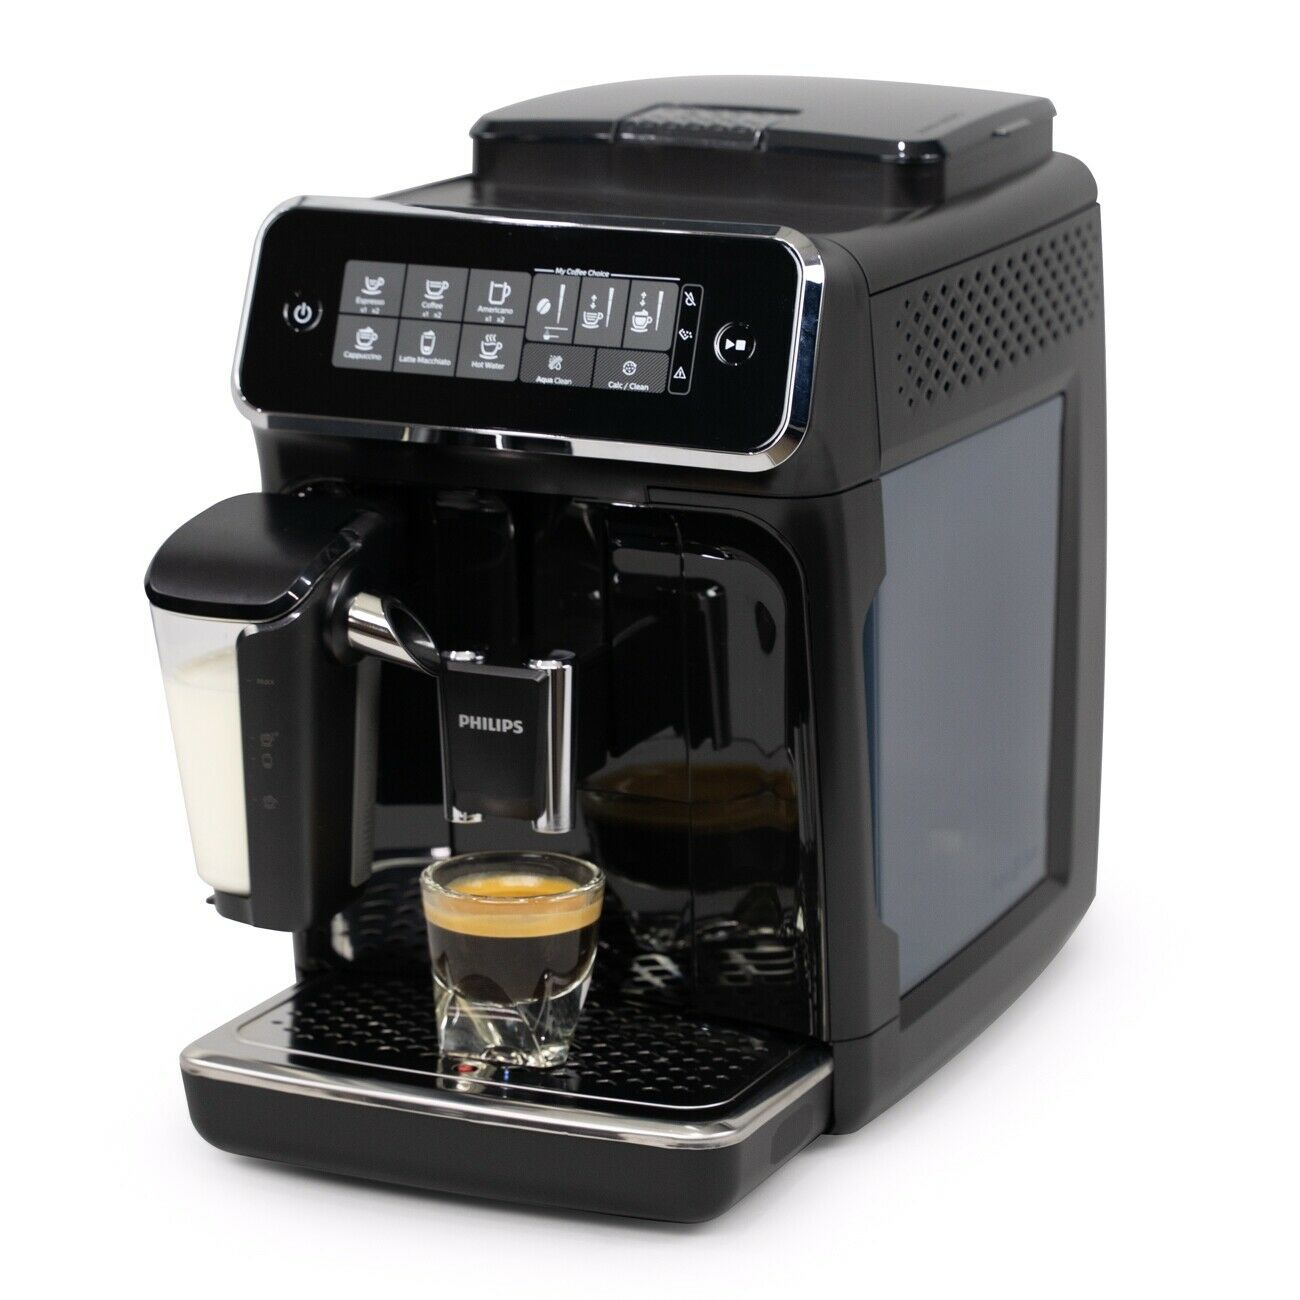 Electric Cuban Espresso Coffee Maker (Cafetera electrica cubana 1-3 tazas)